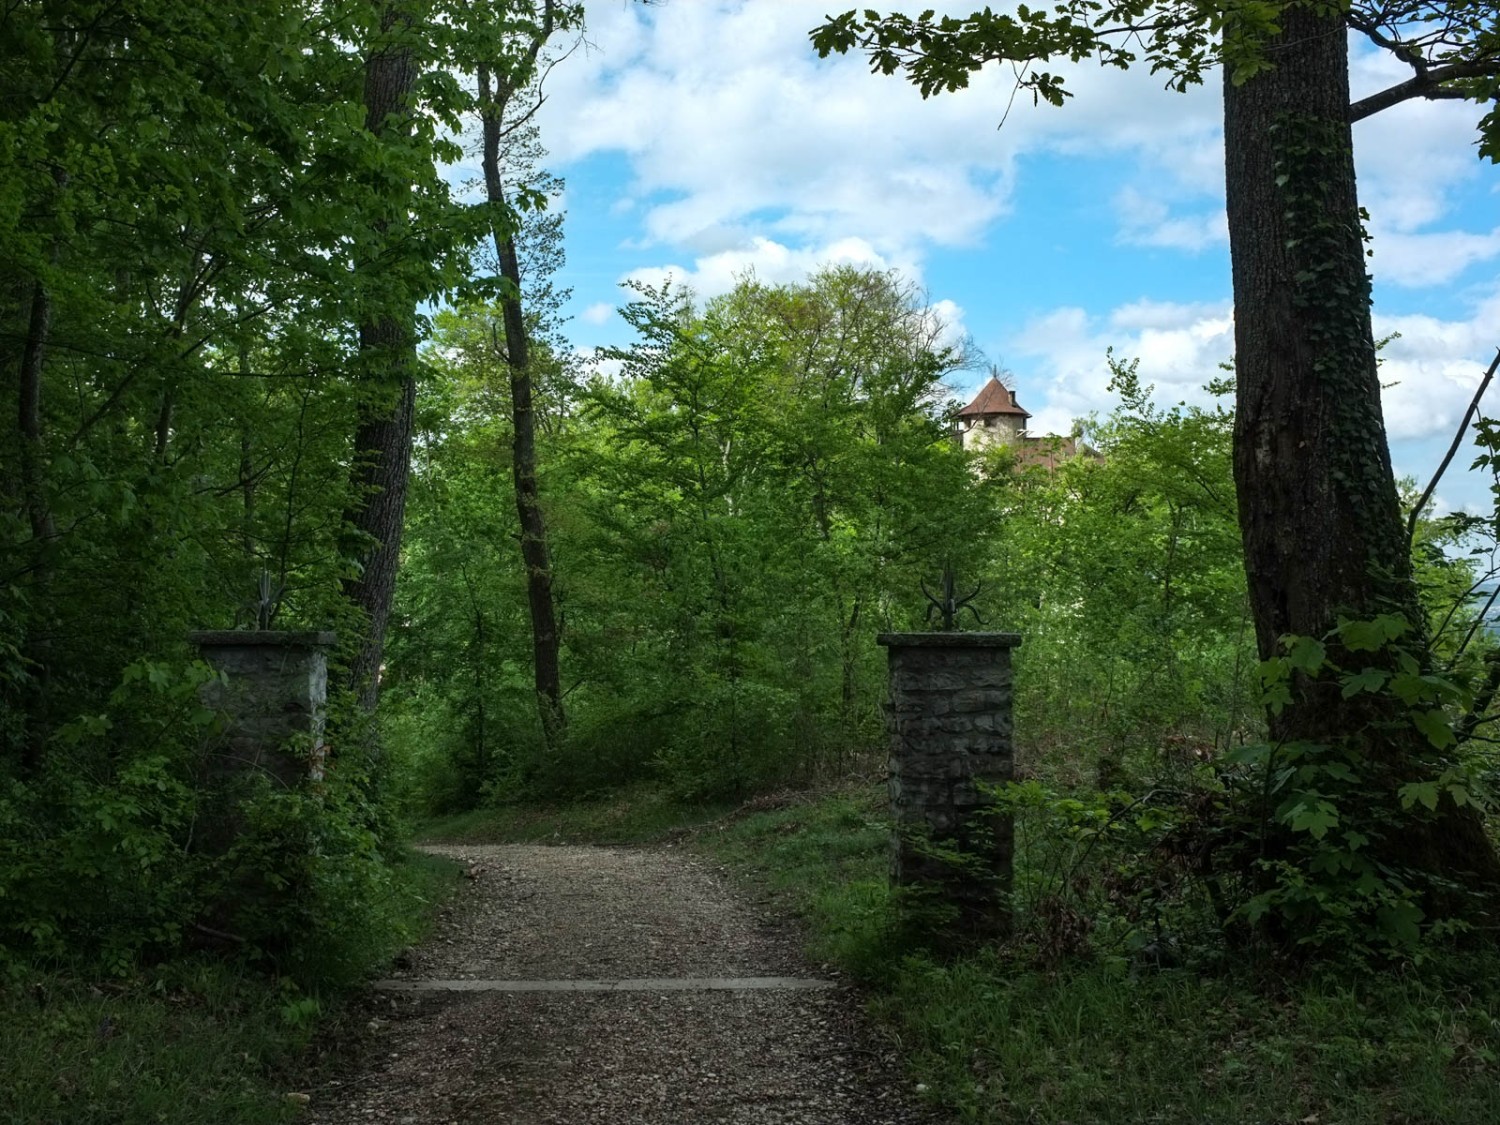 Le château de Reichenstein, caché au cœur de la forêt. Photo: Claudia Peter